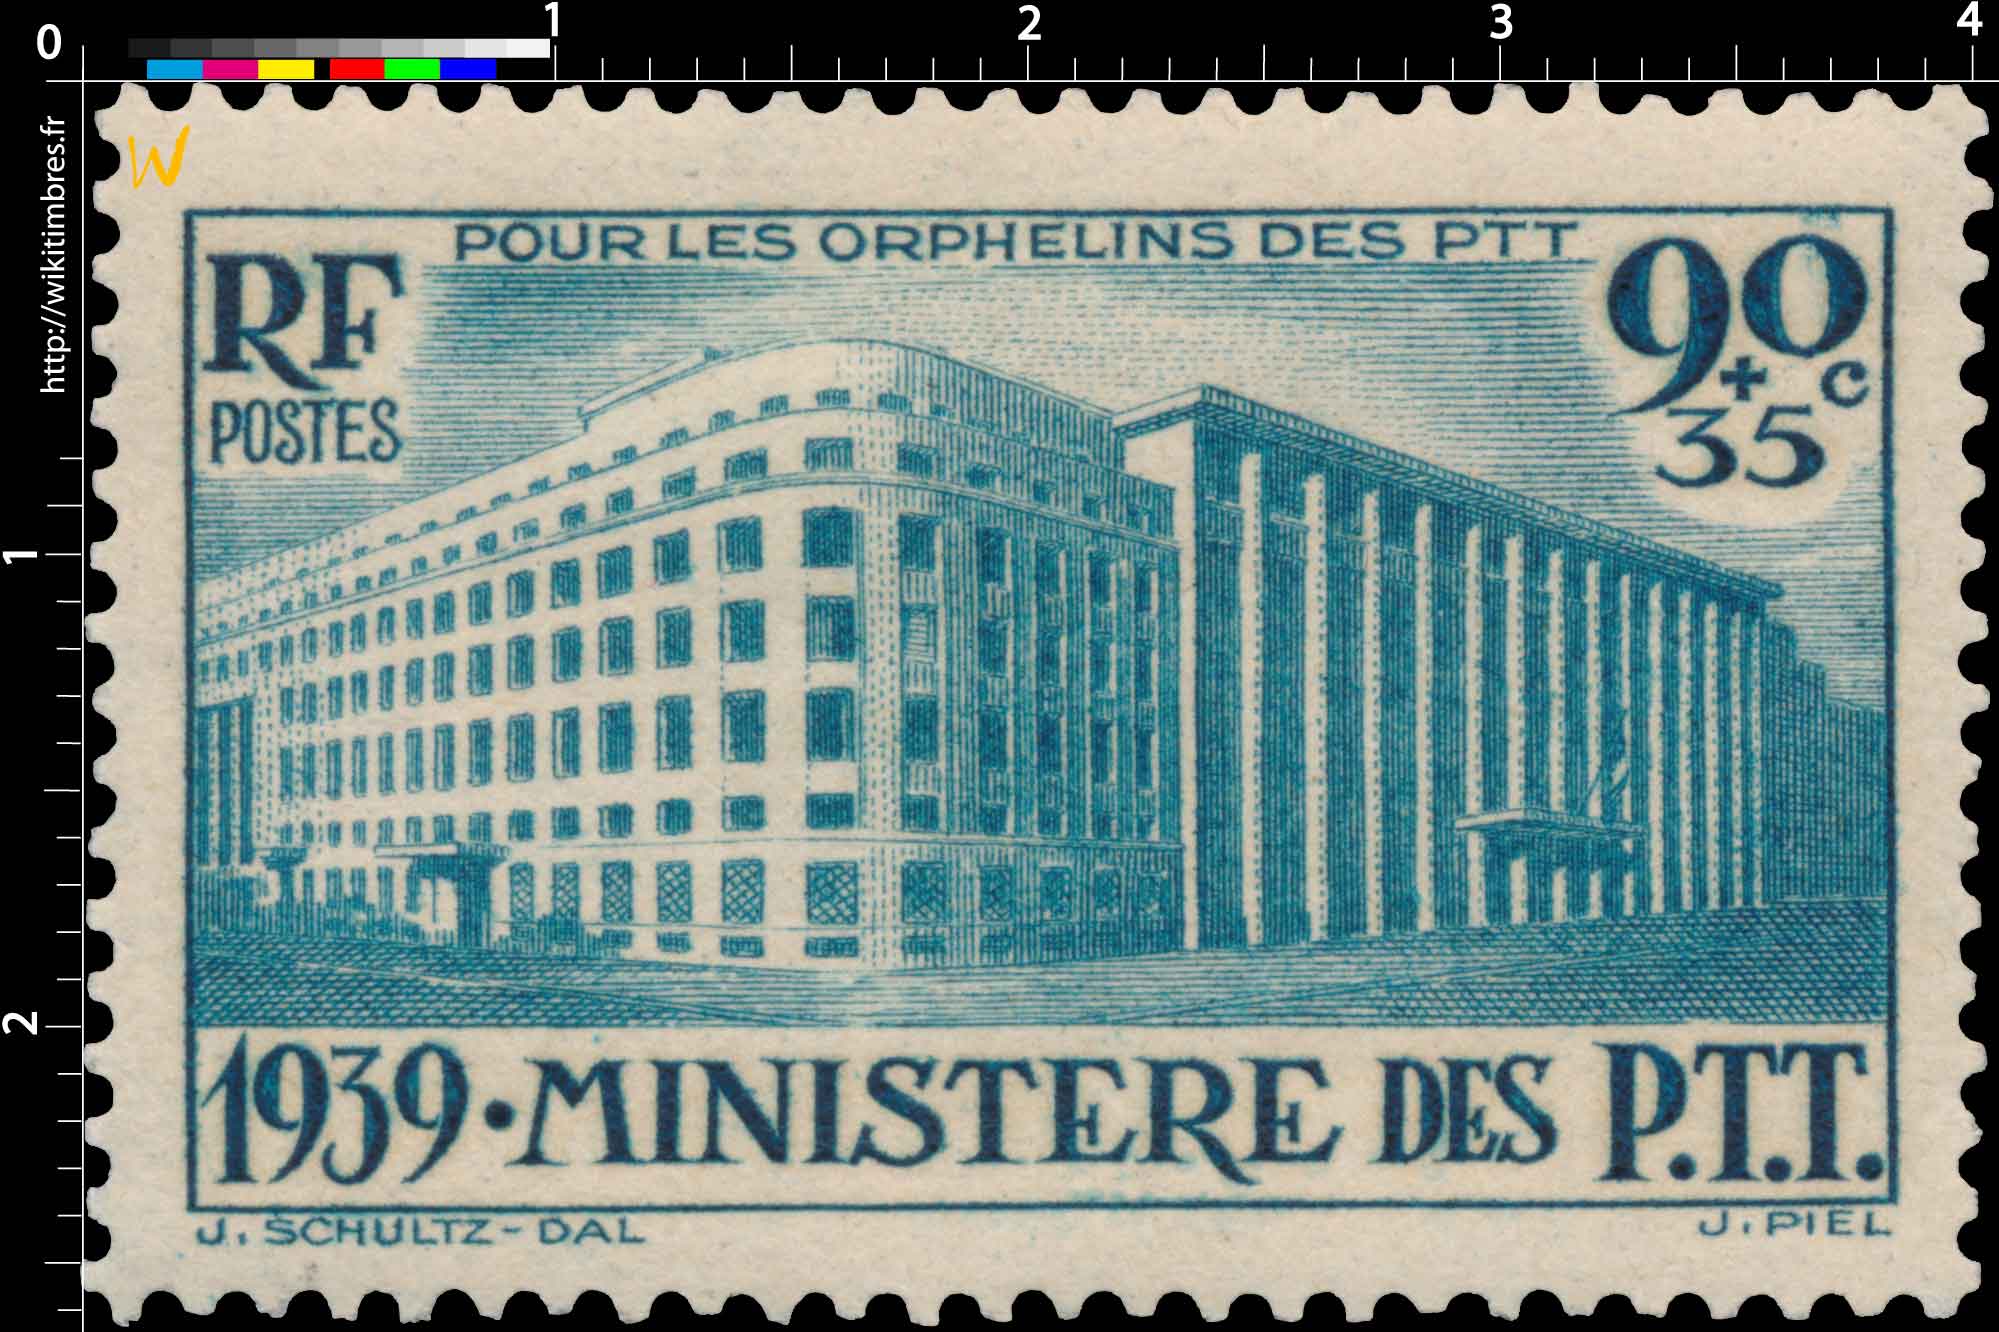 POUR LES ORPHELINS DES PTT 1939. MINISTÈRE DES P.T.T.